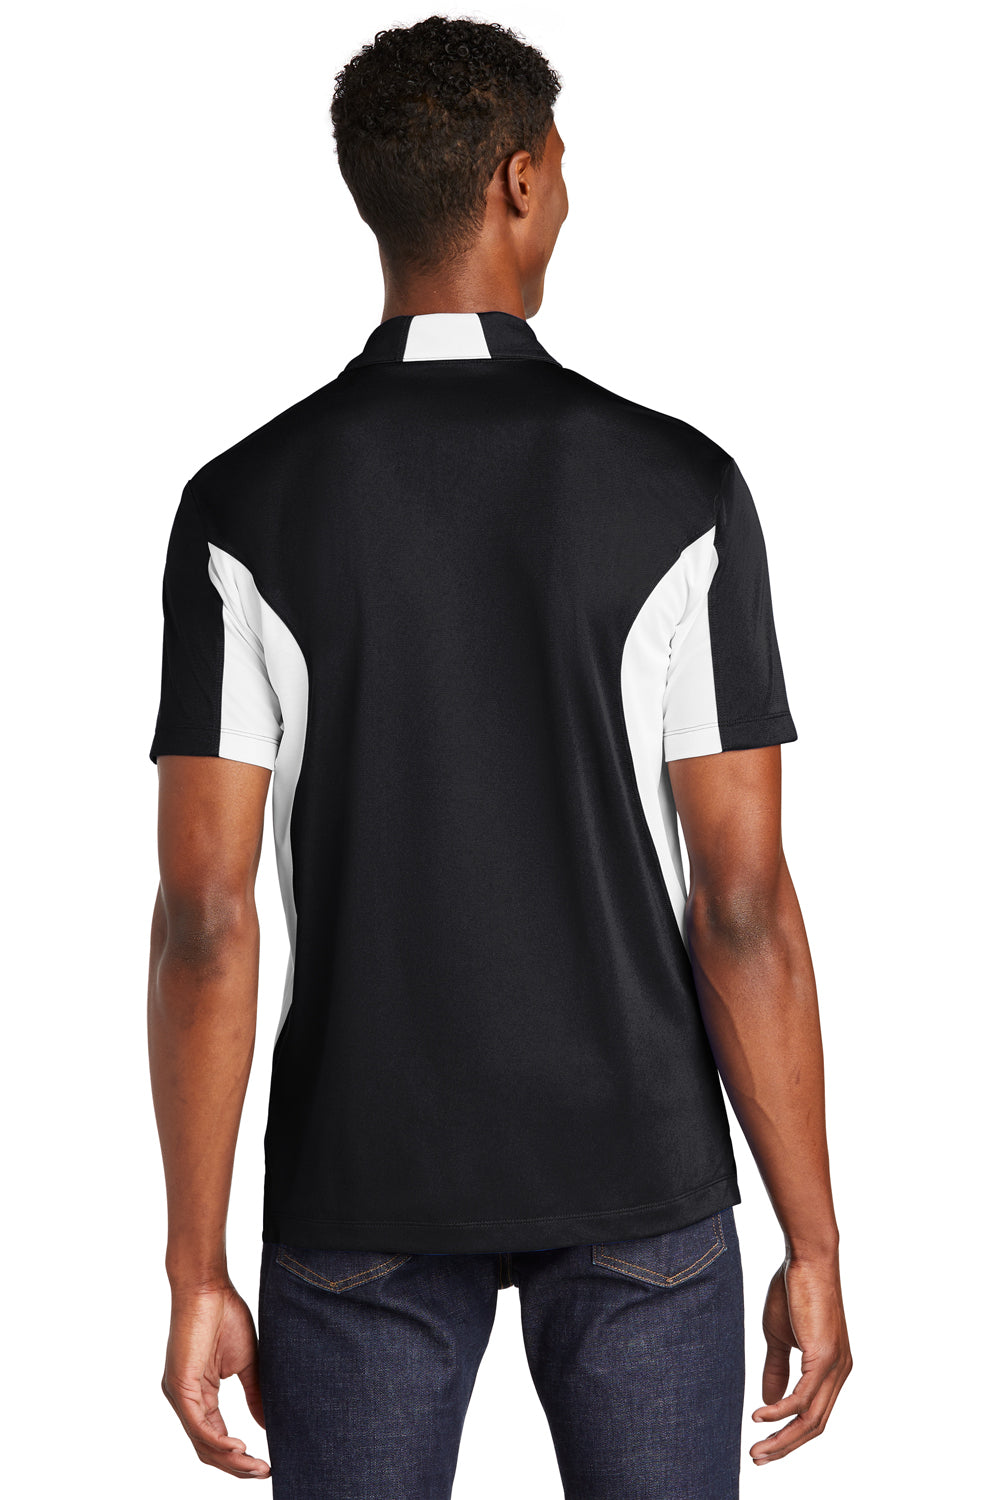 Sport-Tek ST655 Mens Sport-Wick Moisture Wicking Short Sleeve Polo Shirt Black/White Back